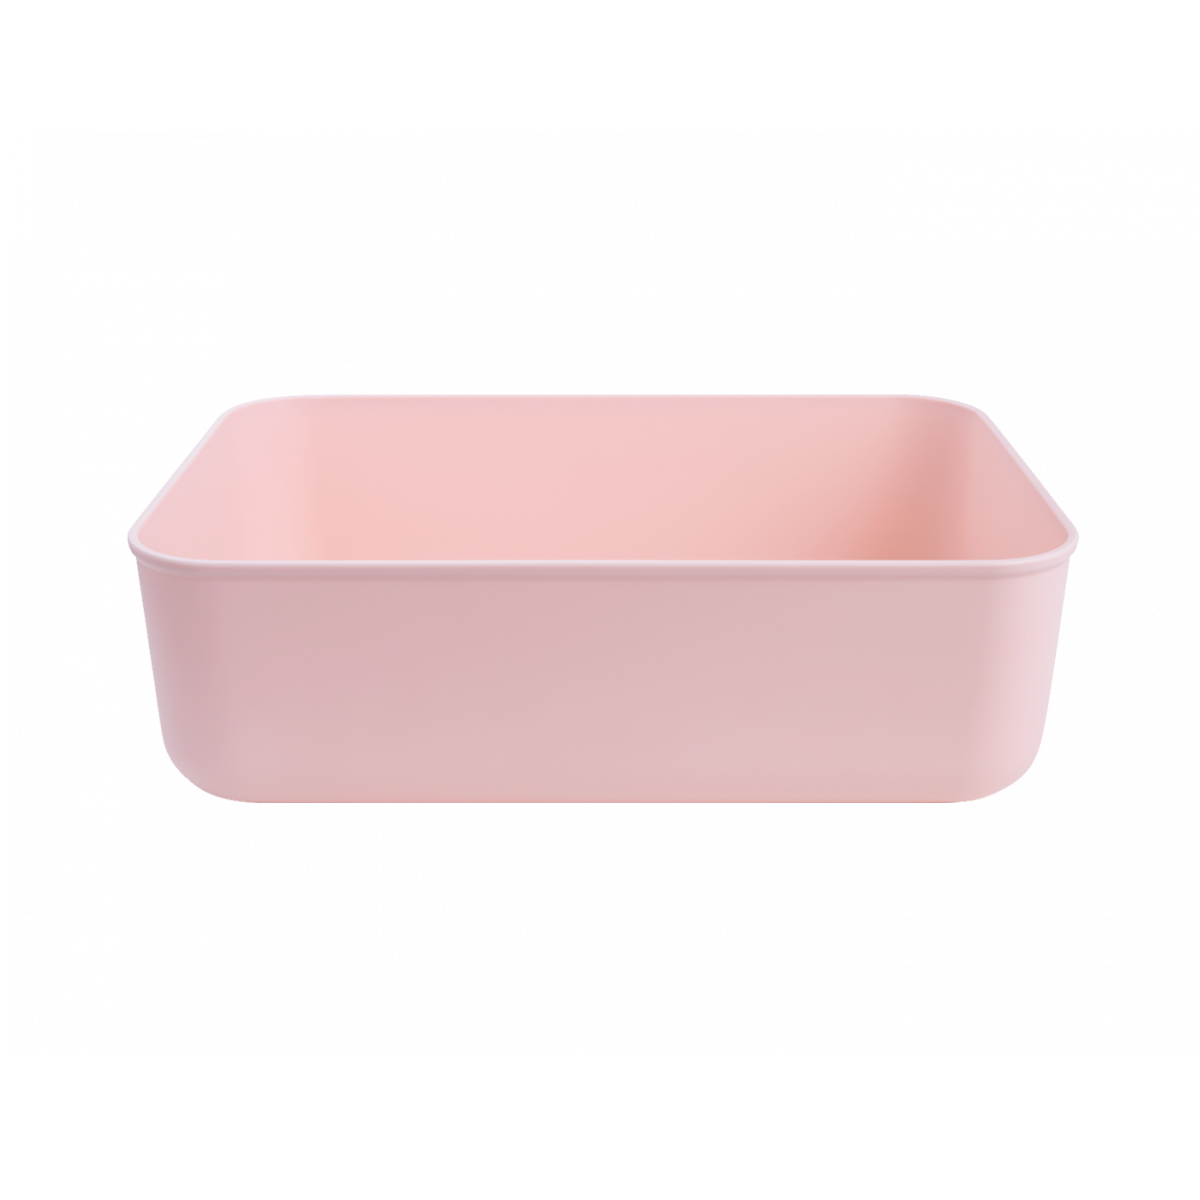 Ящик для хранения MVM пластиковый розовый 80x180x257 FH-10 XS LIGHT PINK